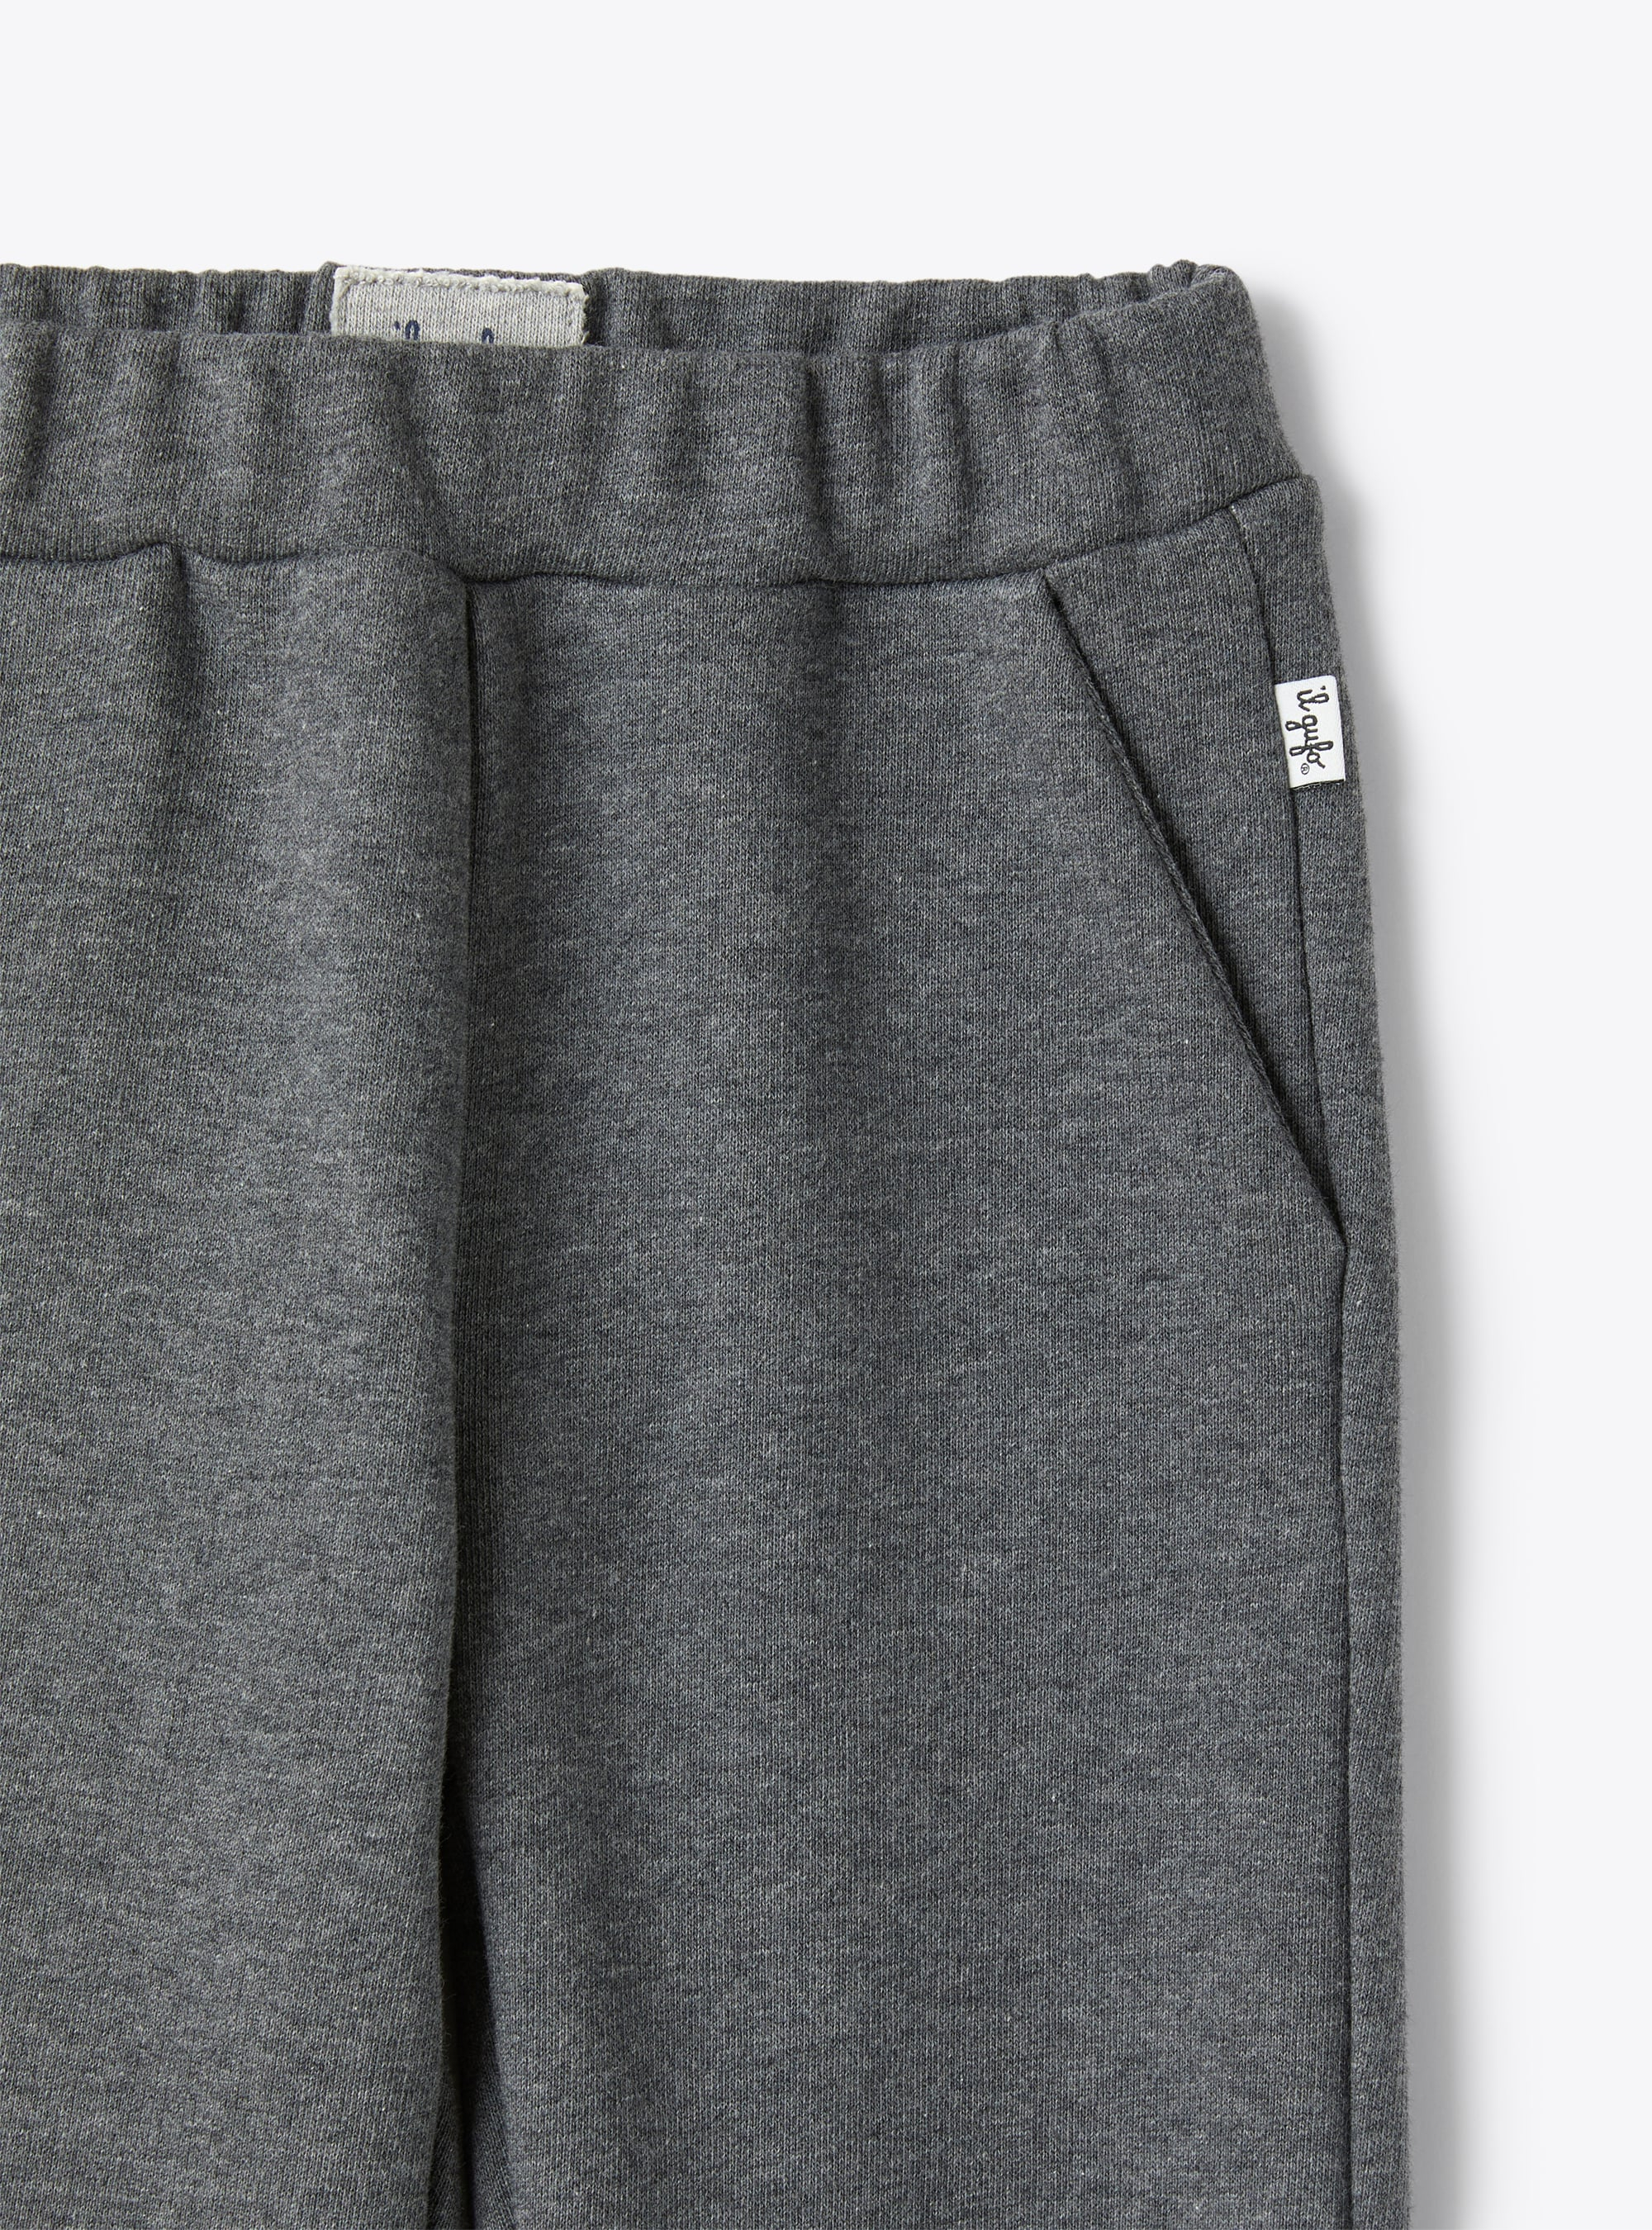 Grey cotton fleece joggers - Grey | Il Gufo